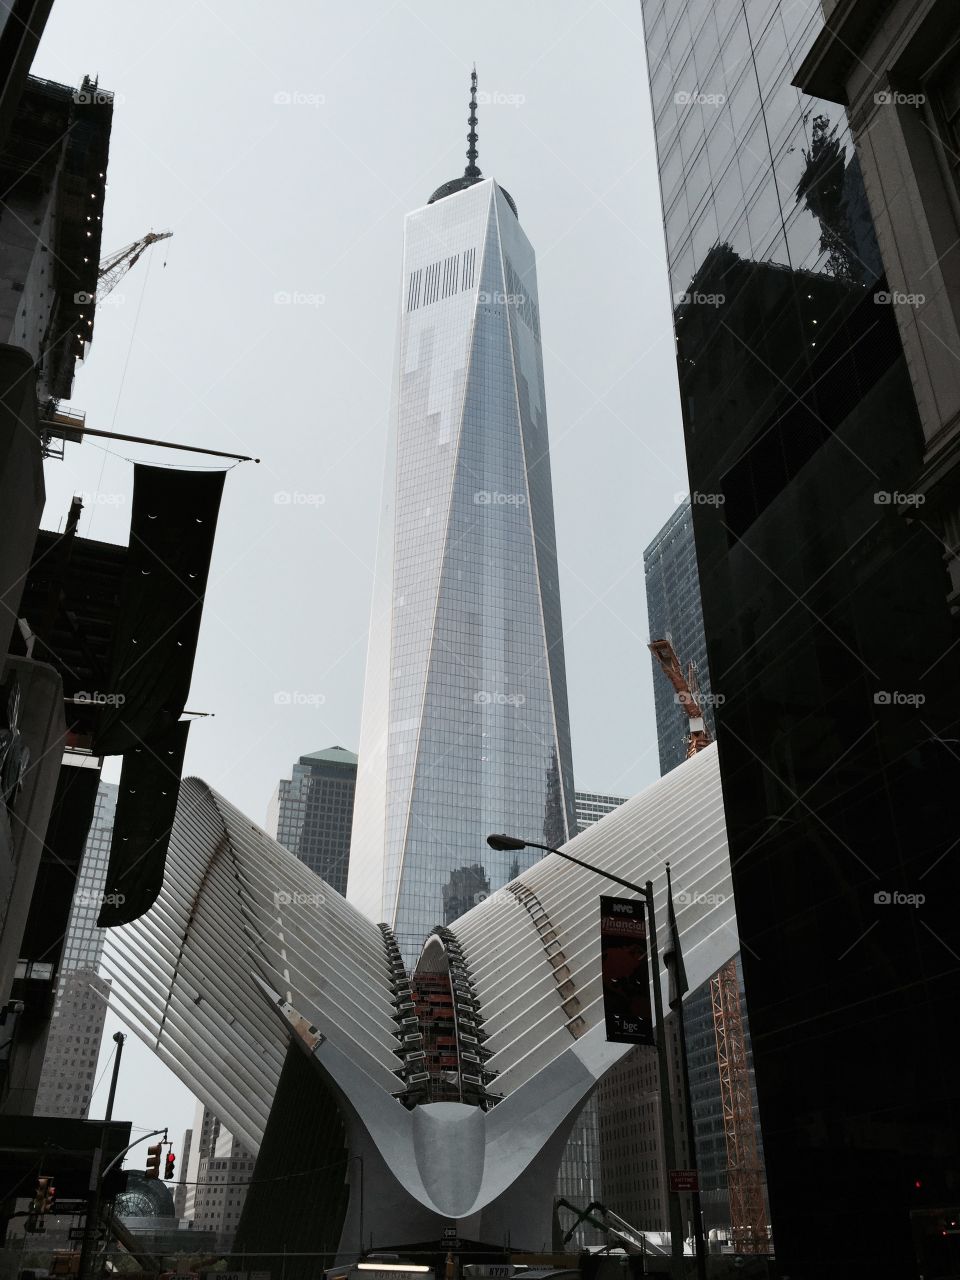 NYC memorial 